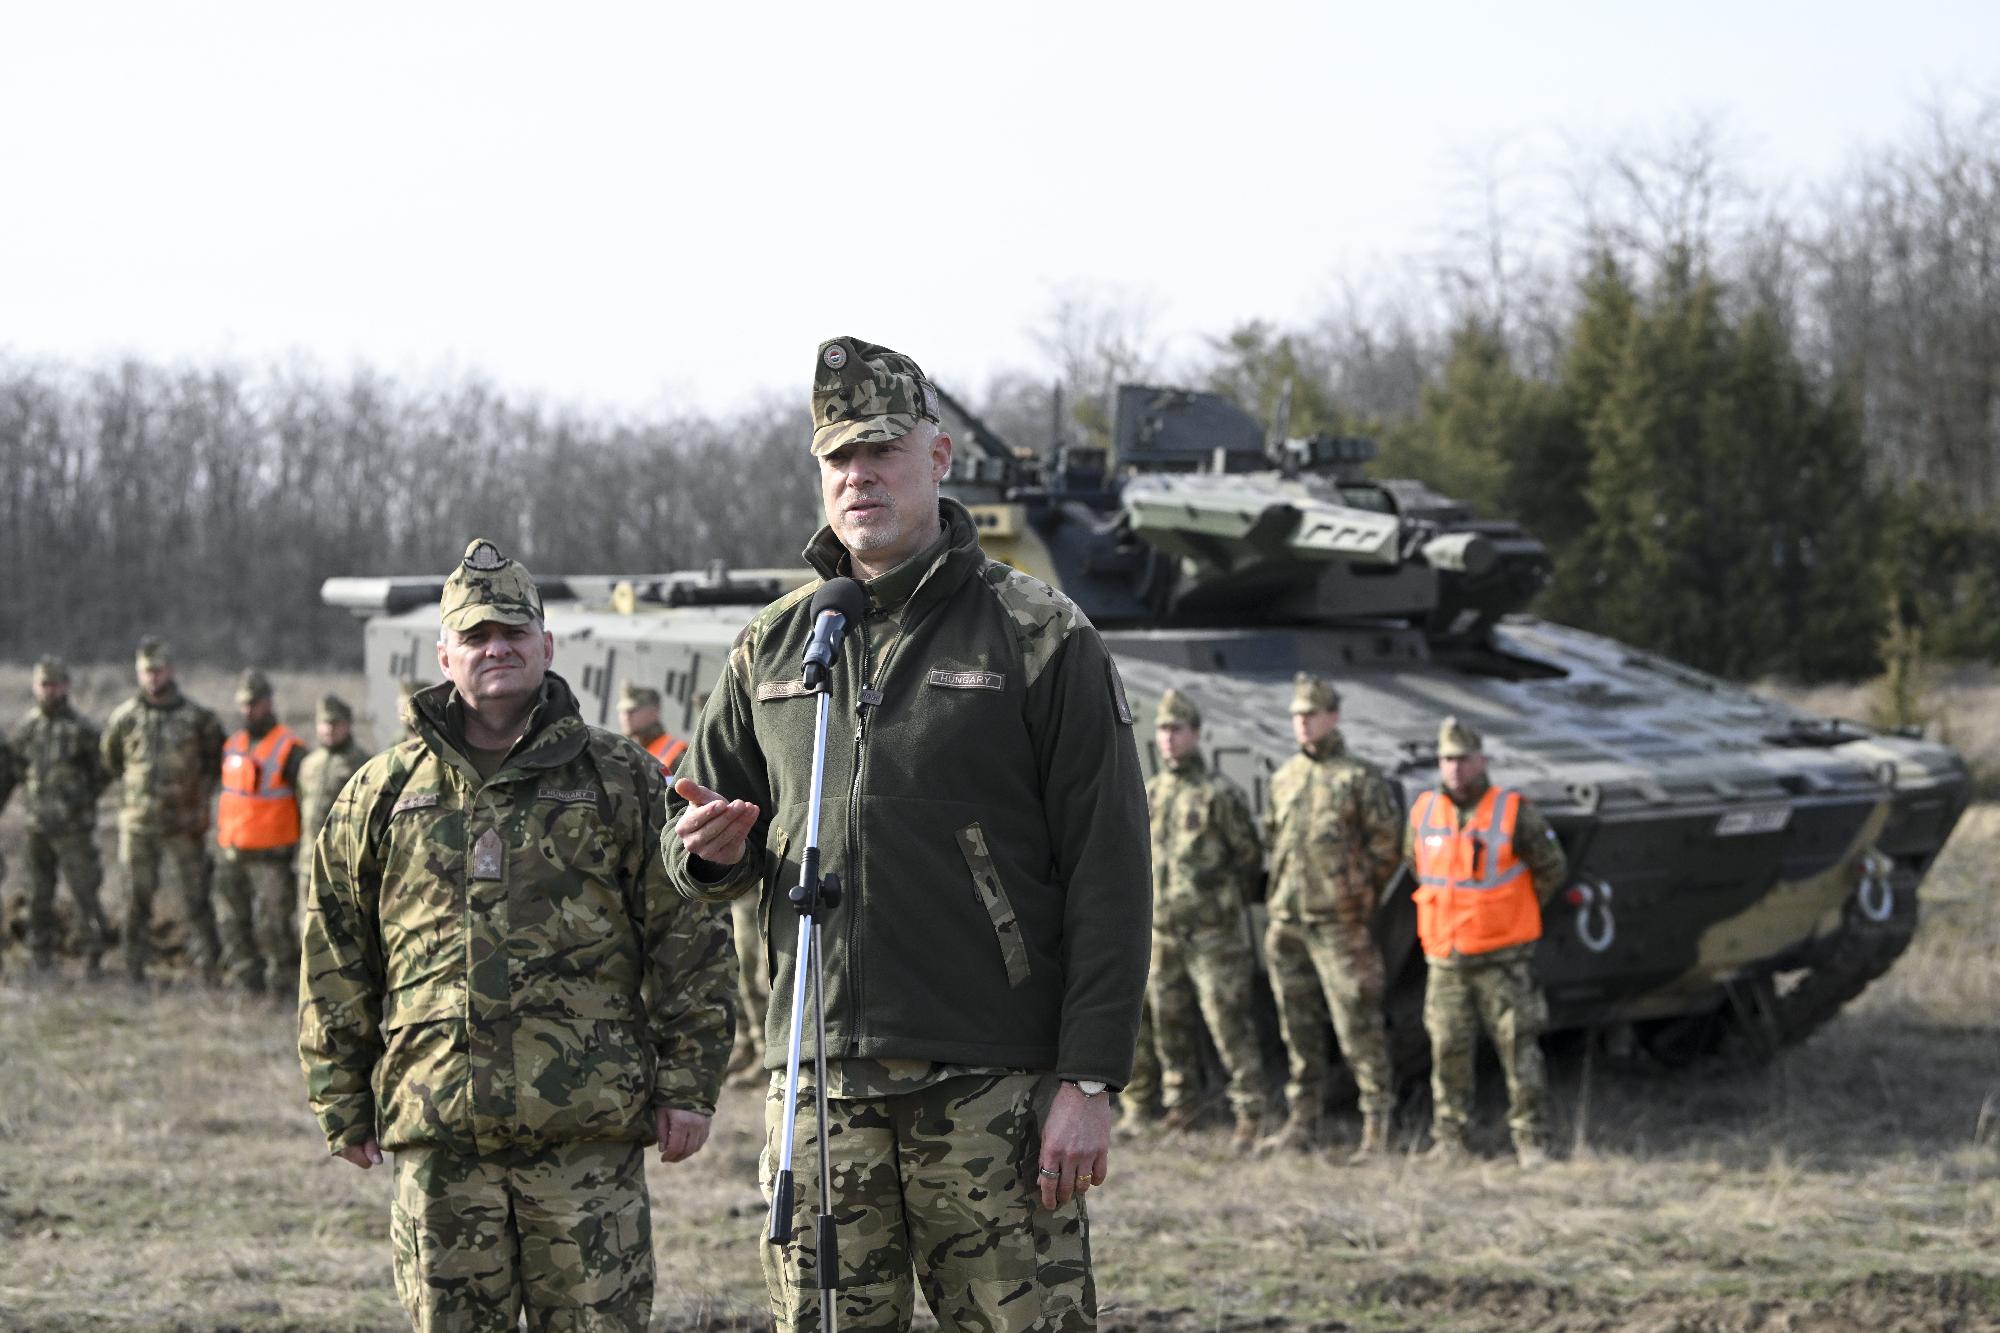 Szalay-Bobrovniczky Kristóf: A Lynx gyalogsági harcjármű a magyarországi gyártás miatt tulajdonképpen „hazai termék